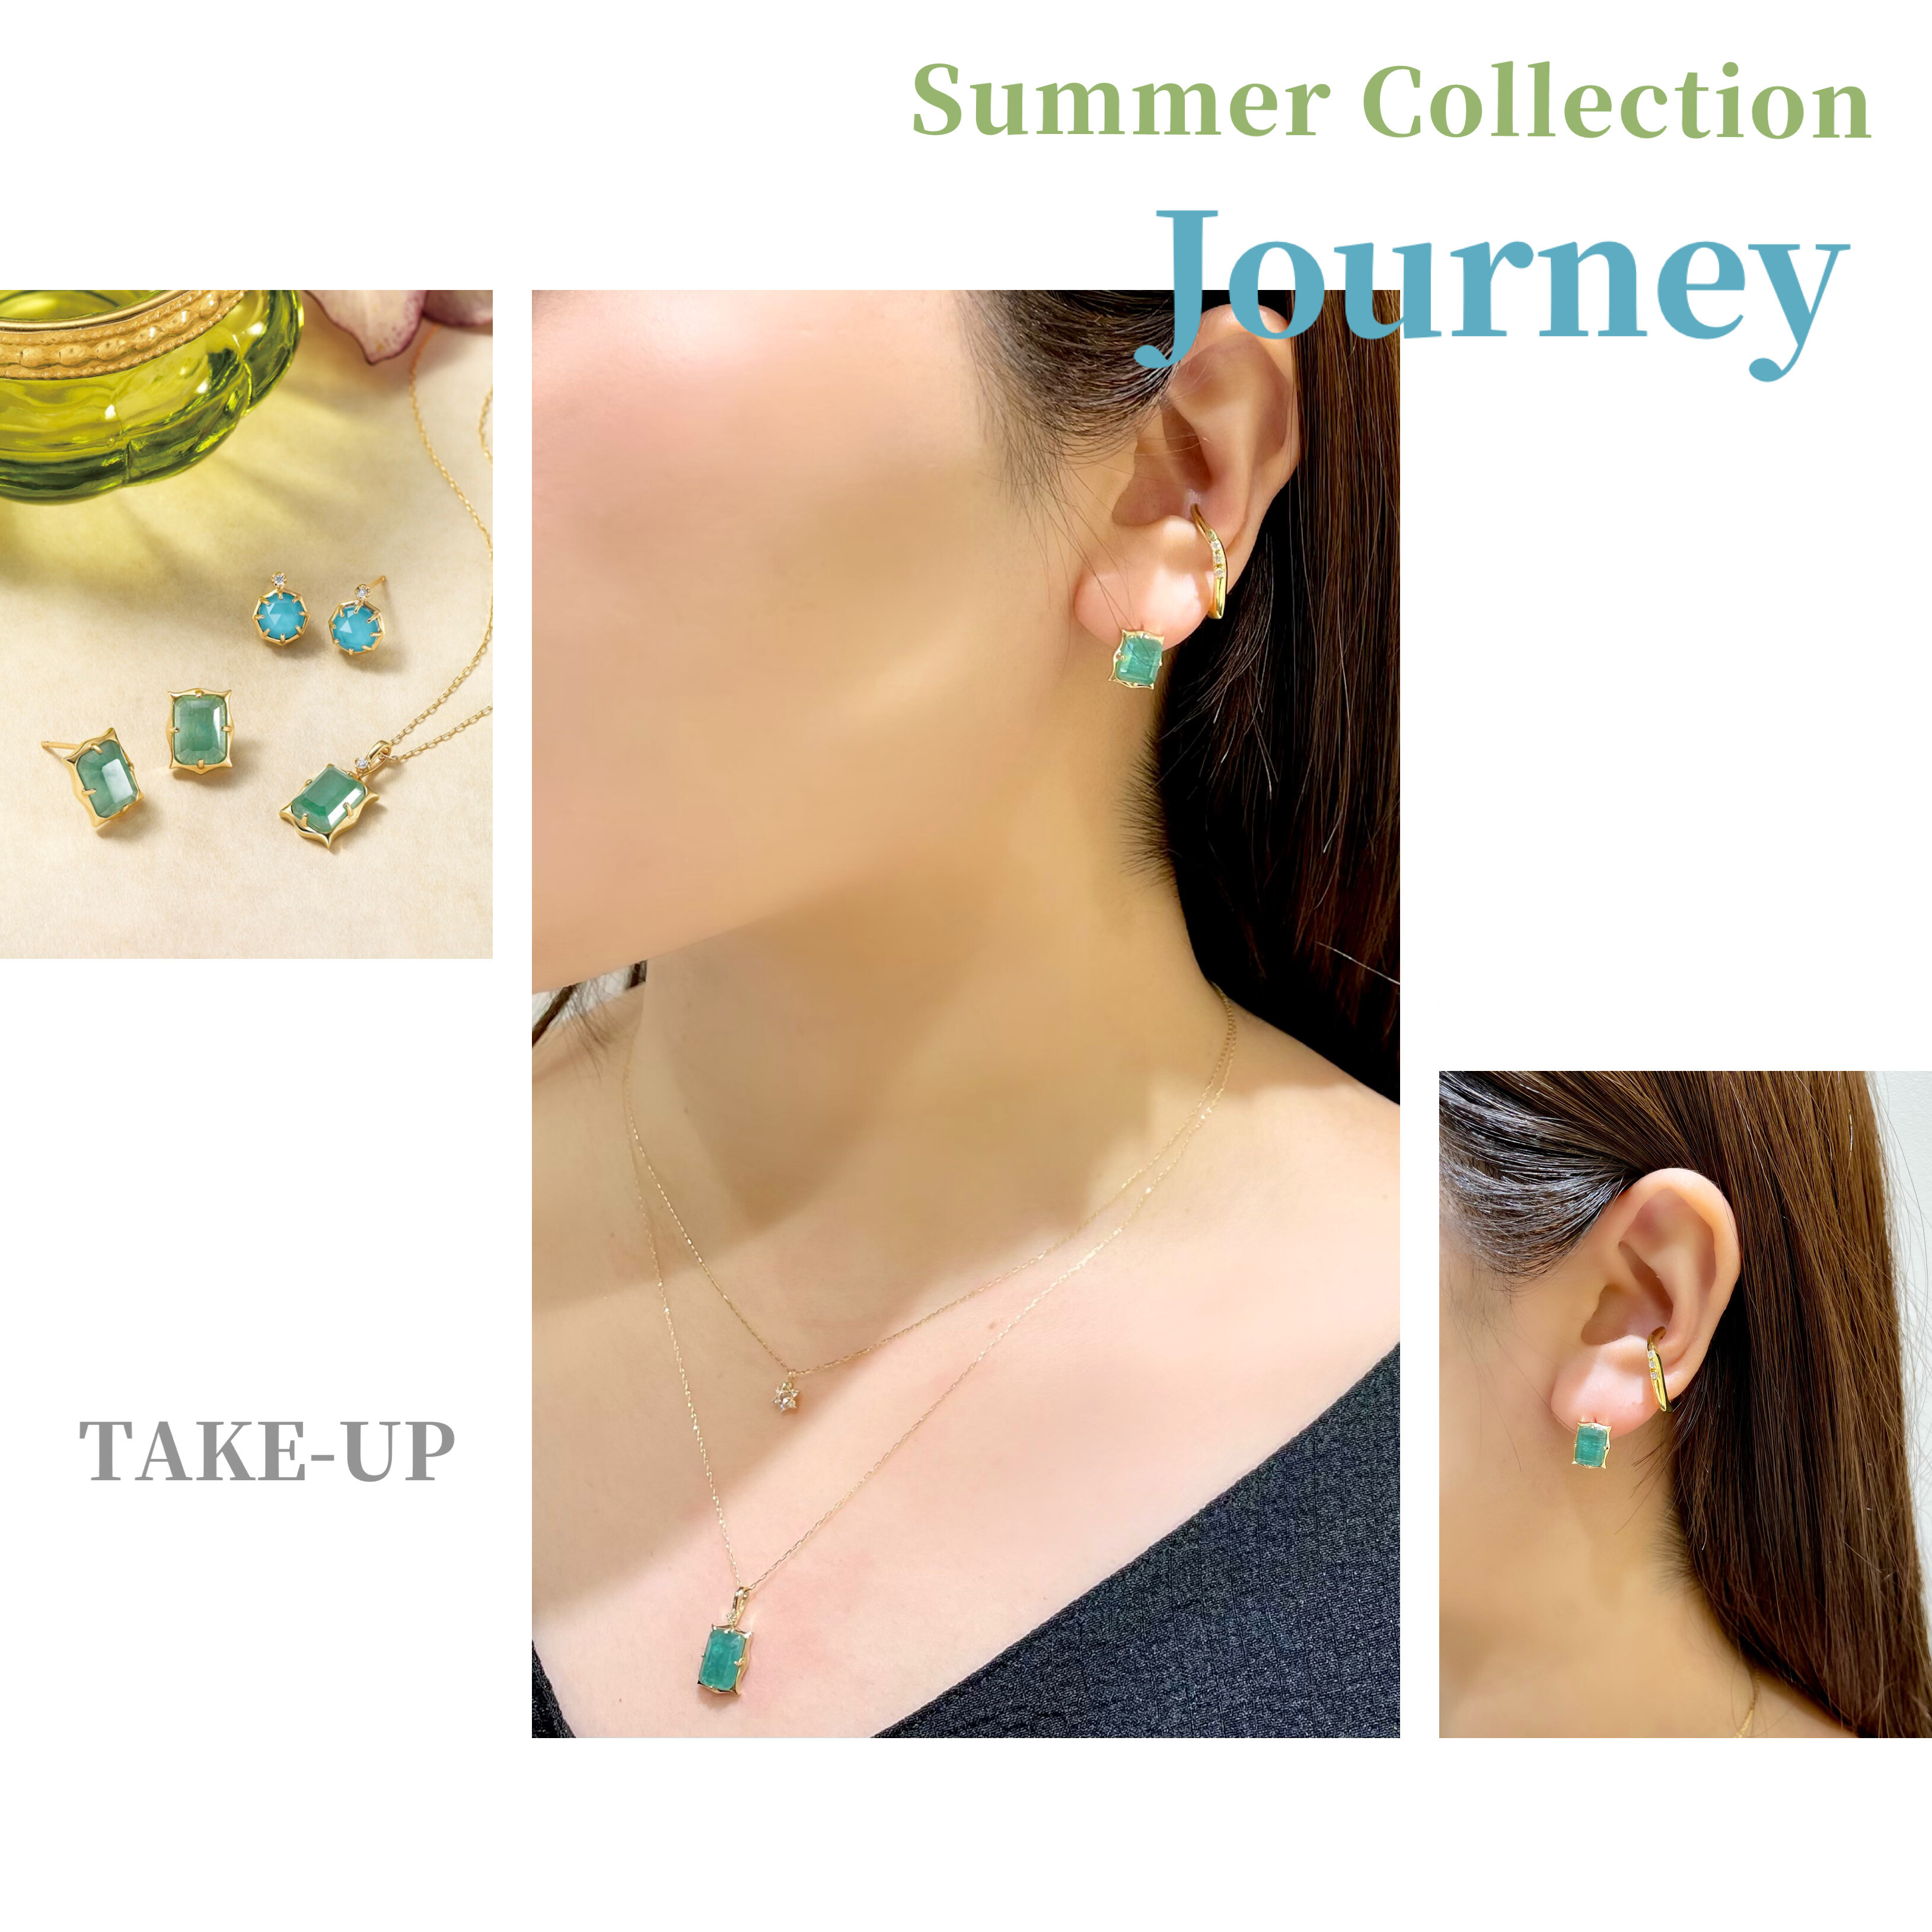 【TAKE-UP】トレンドのくすみグリーンカラーが新鮮🍃 Summer Collection 【Journey】